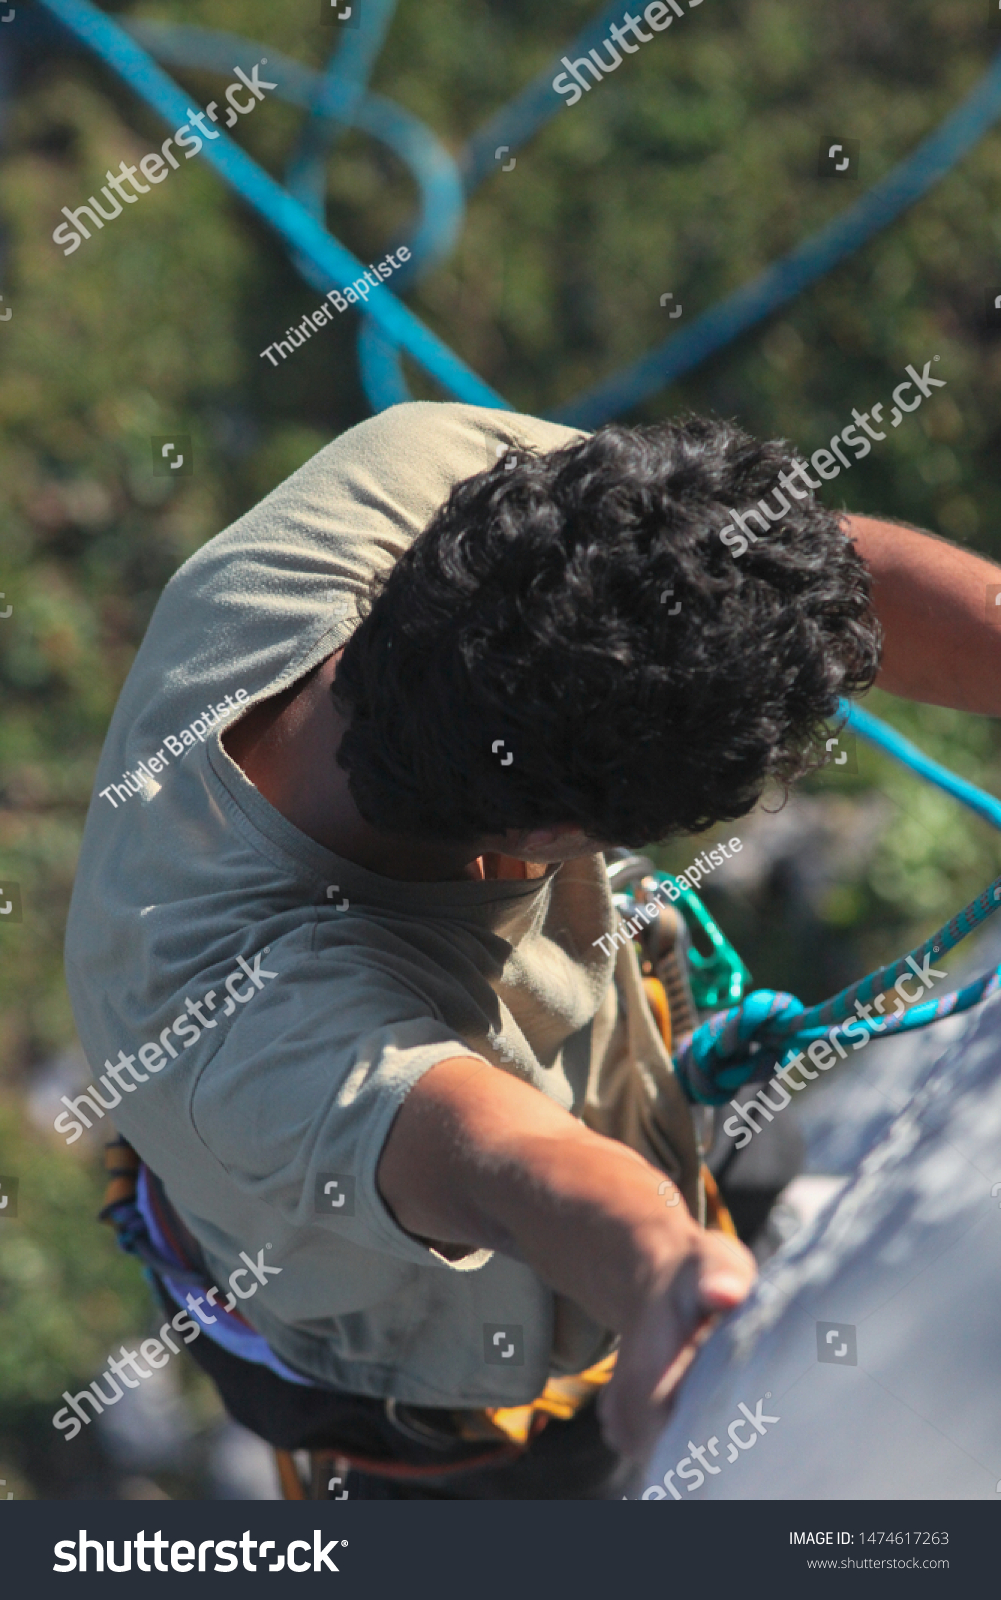 Climbing, climbing equipment, grip, draw, rope, mountain, mountaineering #1474617263